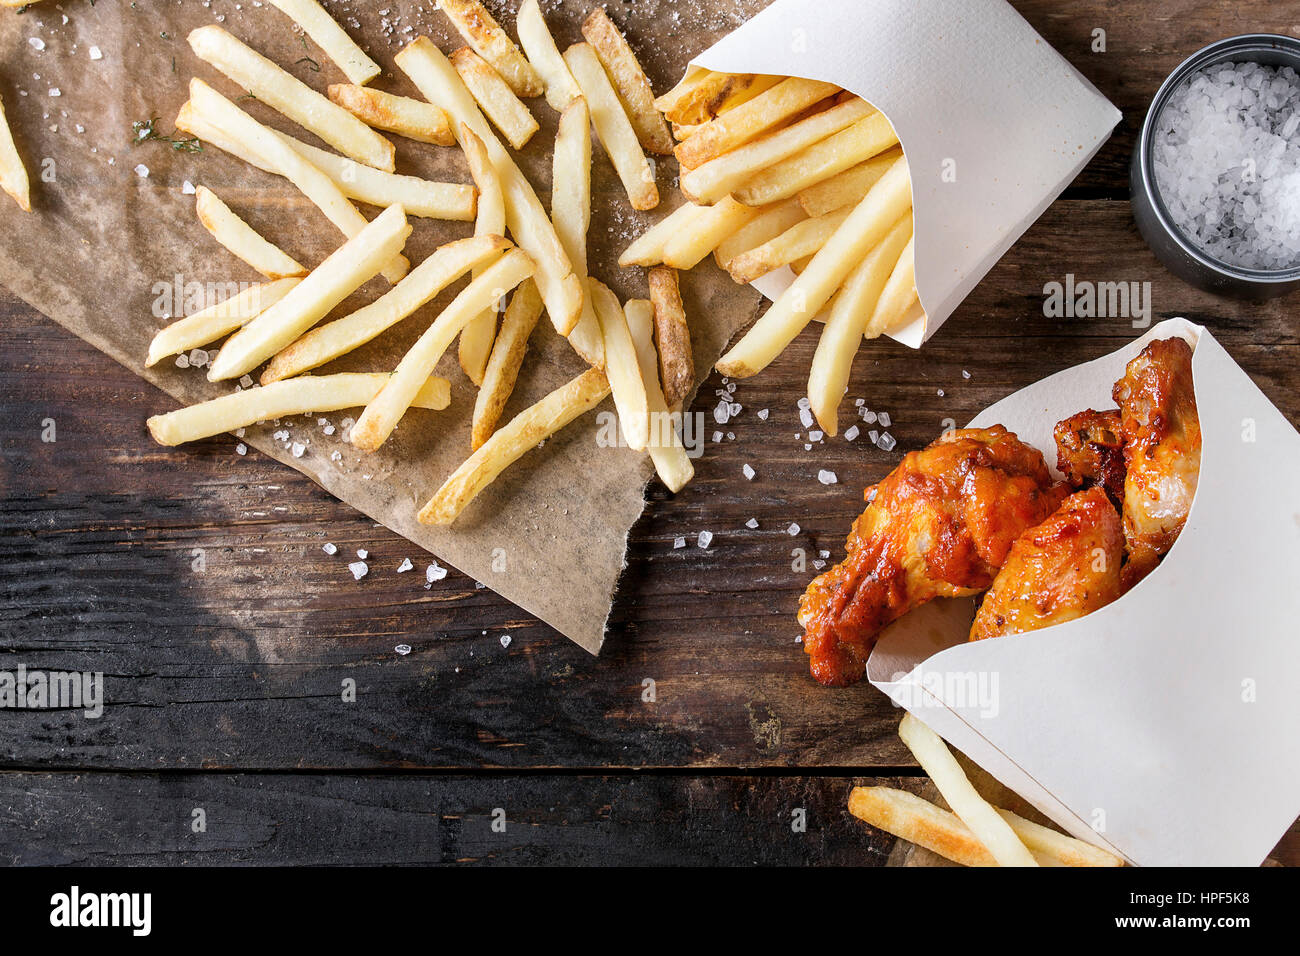 Fast-Food gebraten Huhn Beine, Flügel und Pommes frites Kartoffeln in Lunch-Boxen mit Salz und Ketchup serviert auf Backpapier über alte dunkle wo Soße Stockfoto